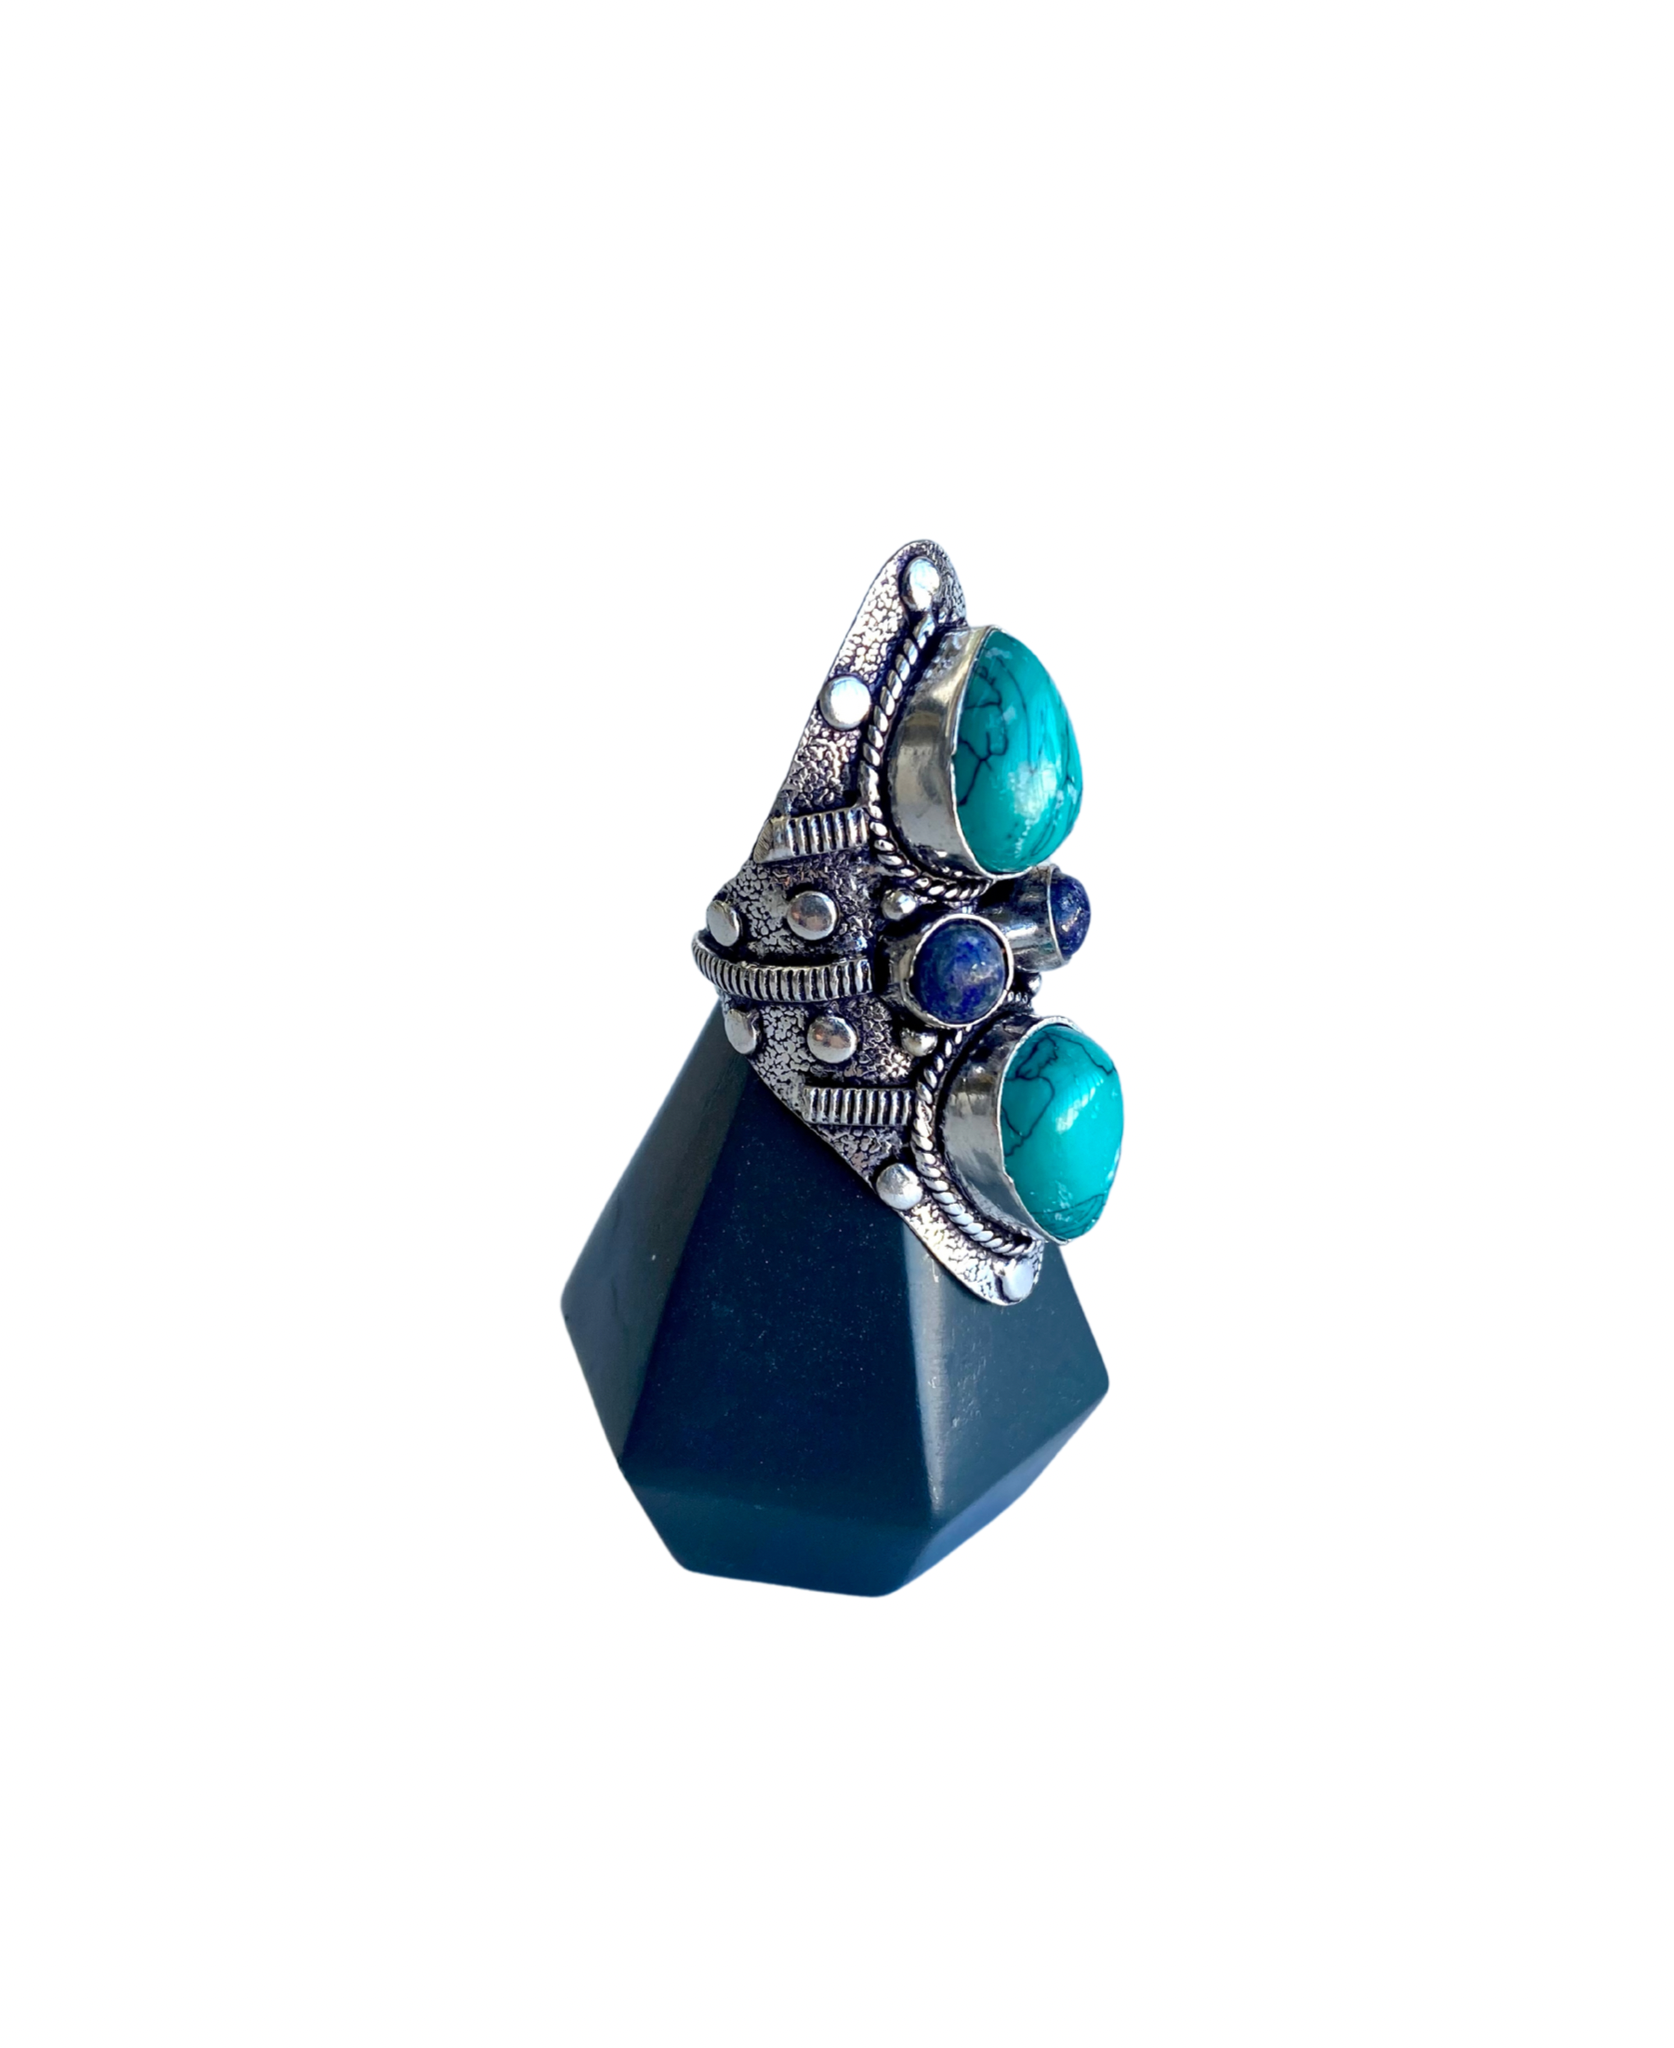 Santa Rosa Turquoise Long Gemstone Ring - Size 8.25